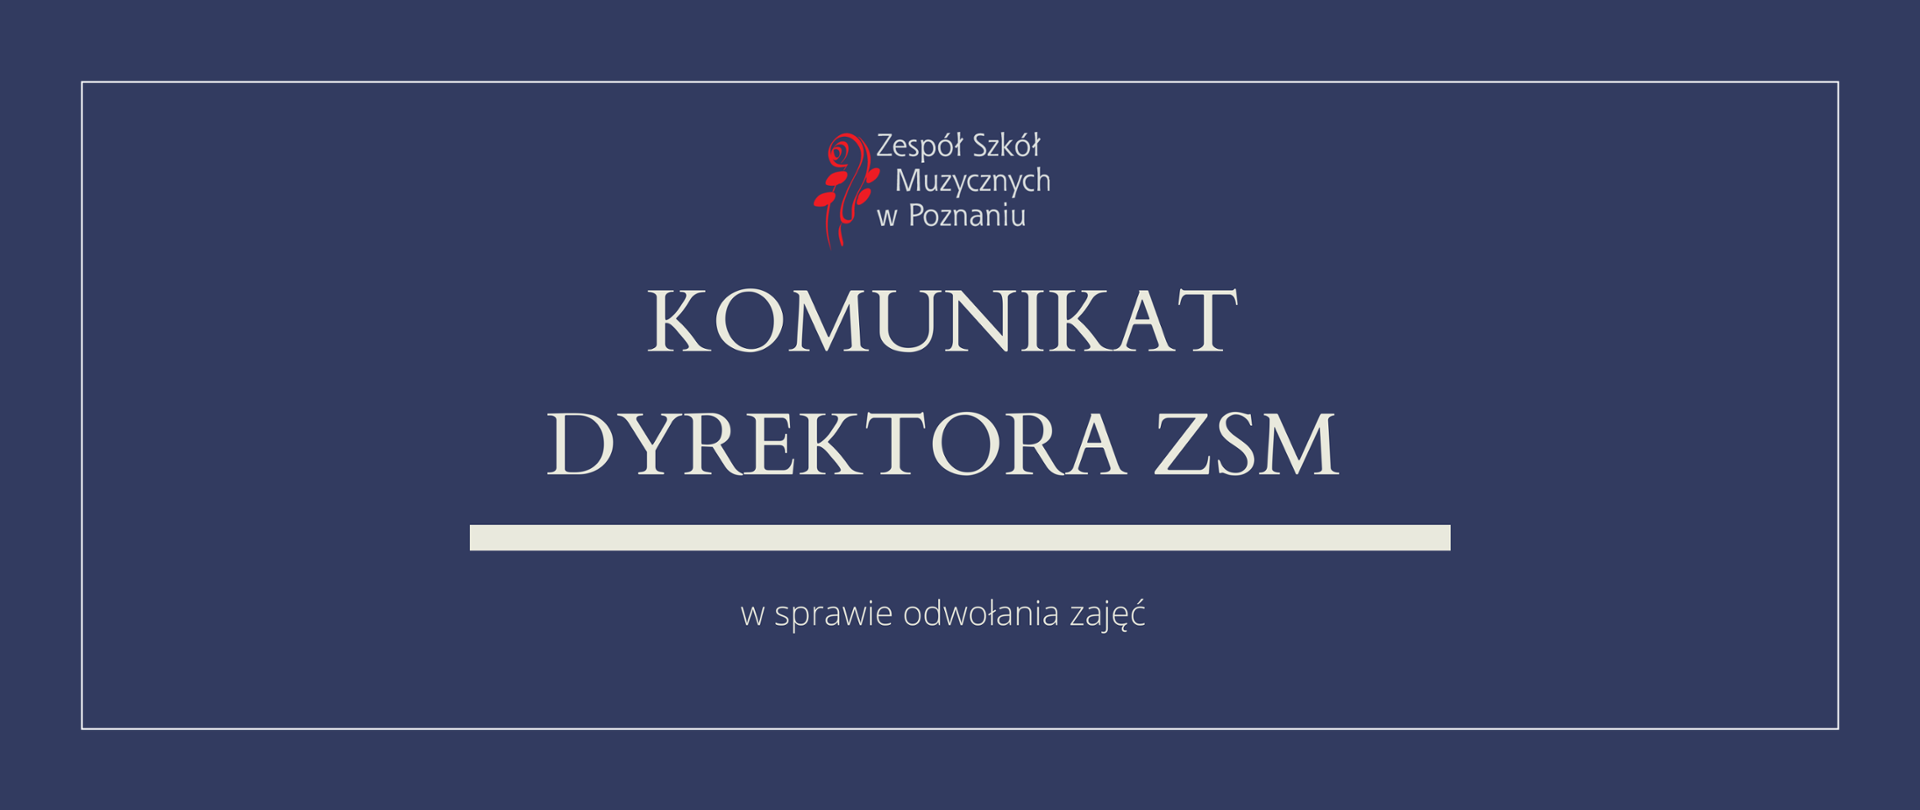 Granatowa grafika z logo ZSM i tekstem /"KOMUNIKAT DYREKTORA ZSM"/ poniżej biała gruba linia z napisem w sprawie odwołania zajęć.